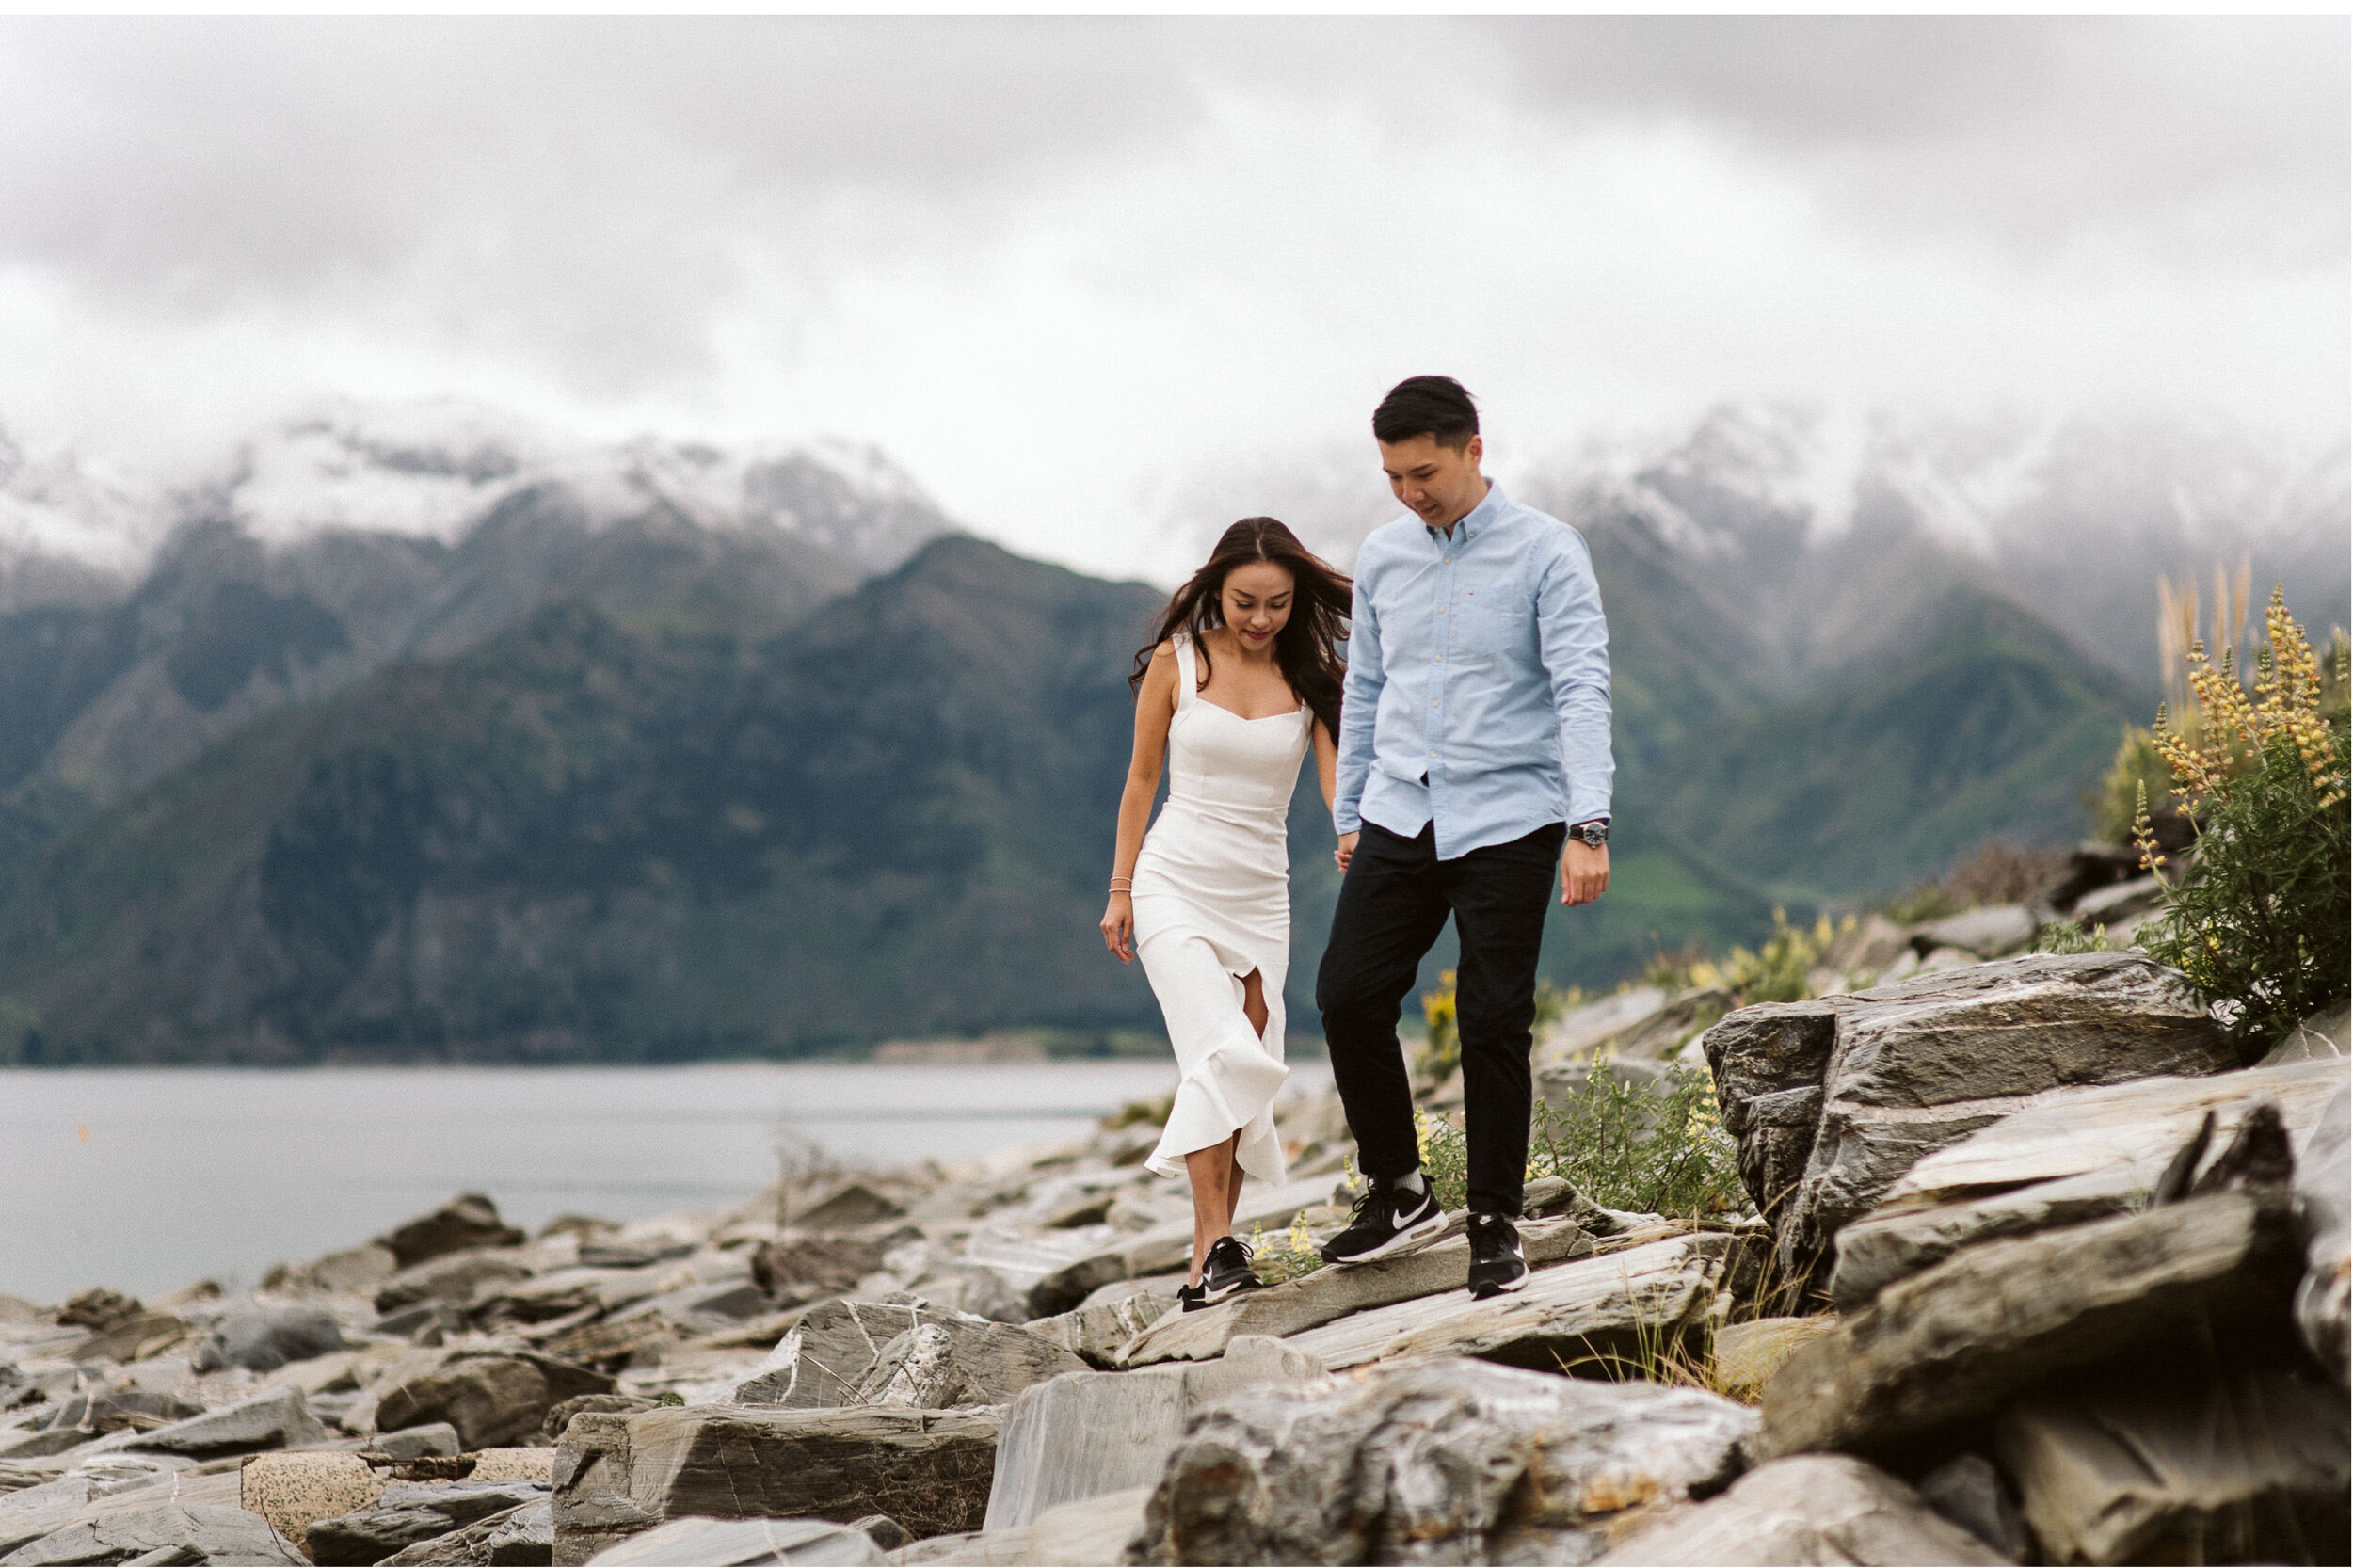 West-Coast-New-Zealand-Engagement-Photographer-006.jpg